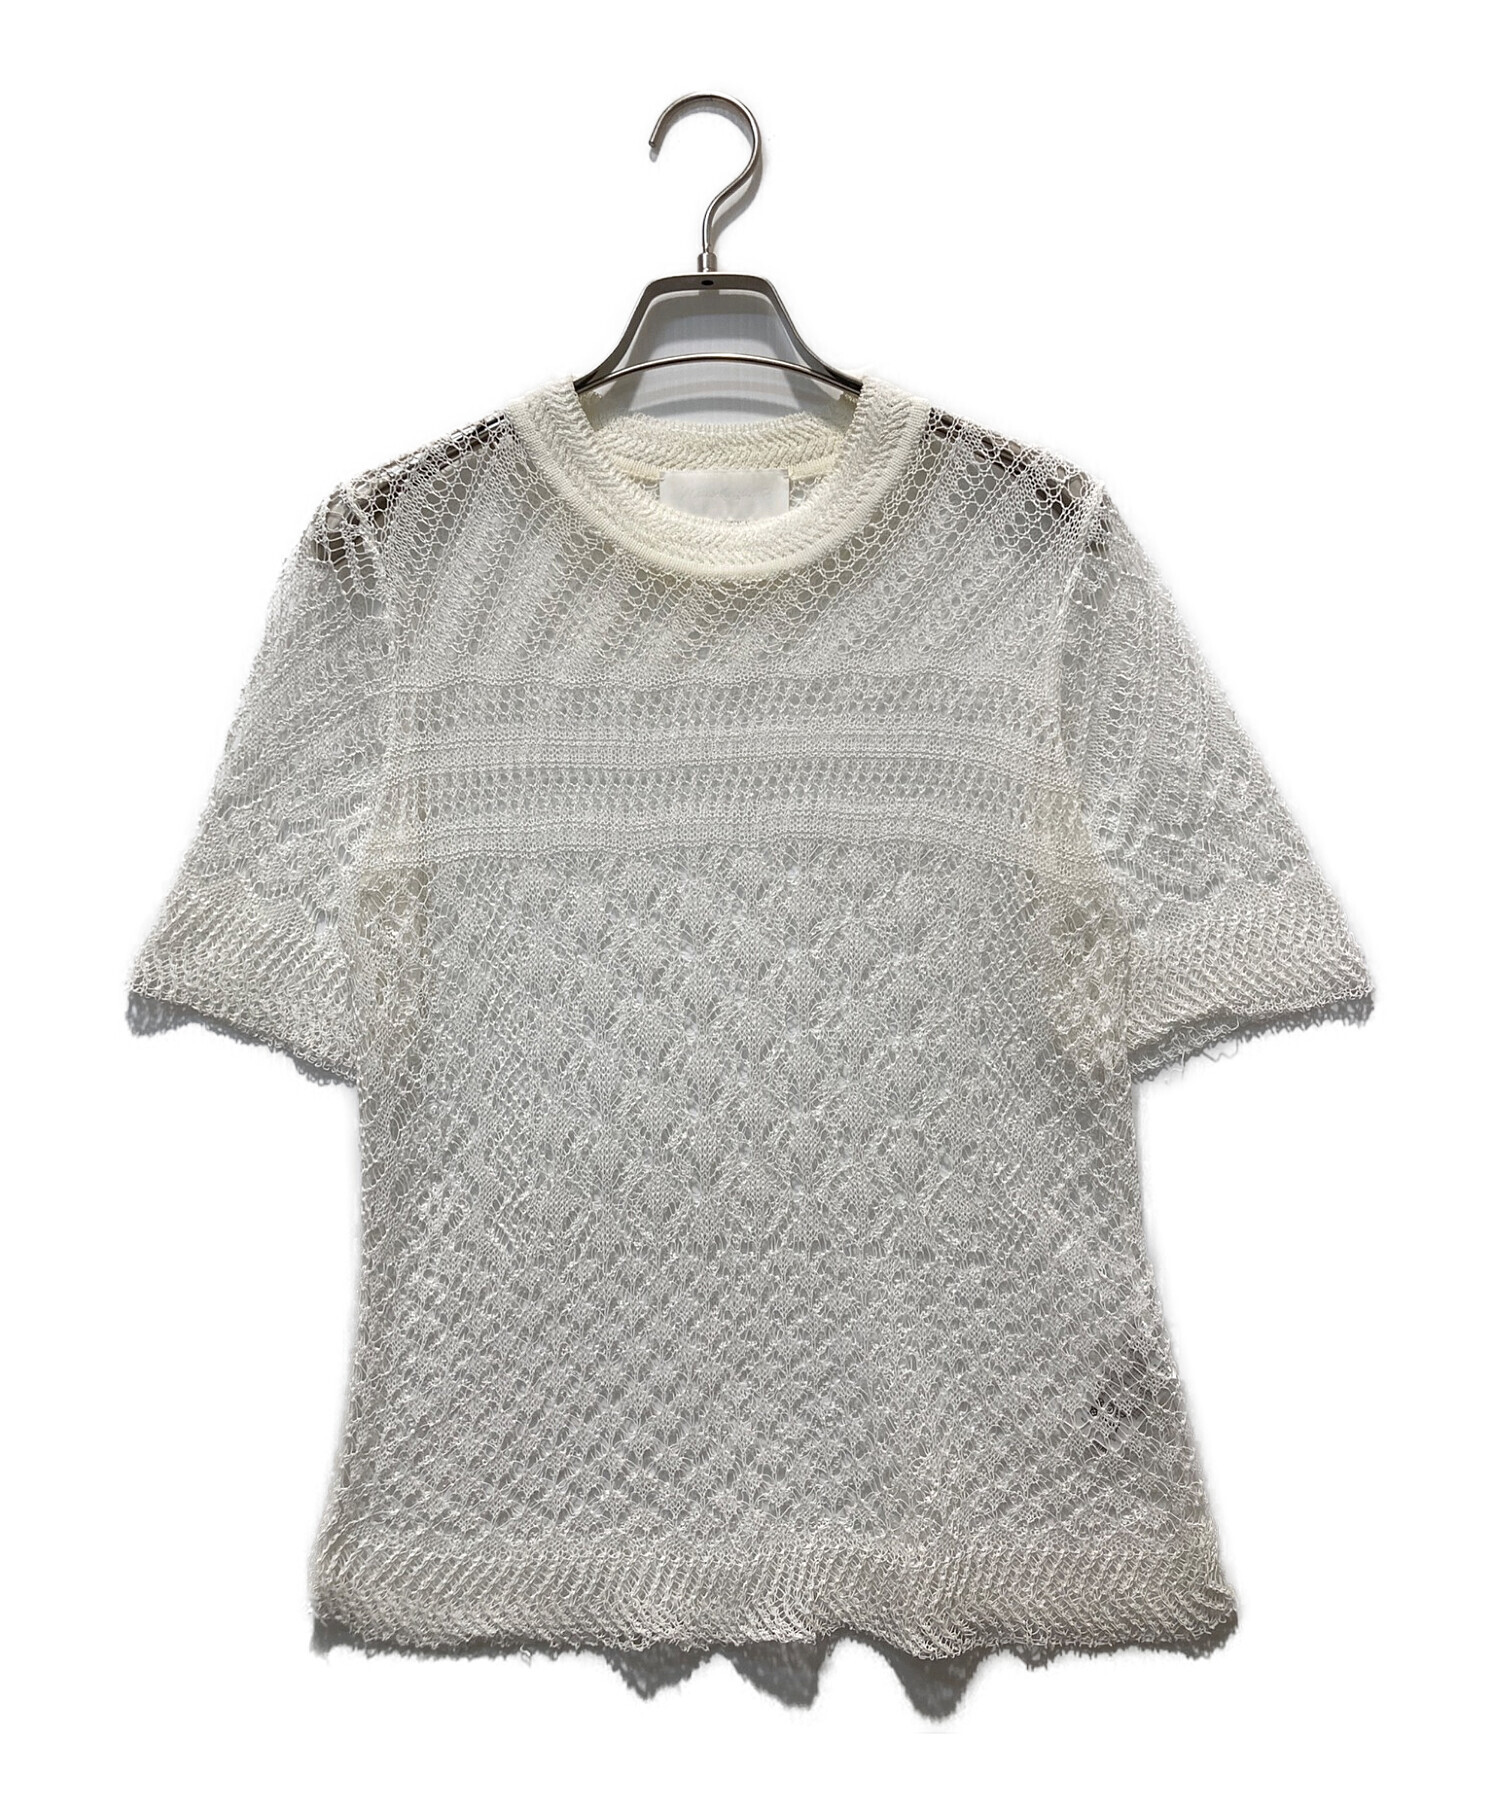 mame kurogouchi (マメクロゴウチ) 透かし編み半袖ニット ホワイト サイズ:1